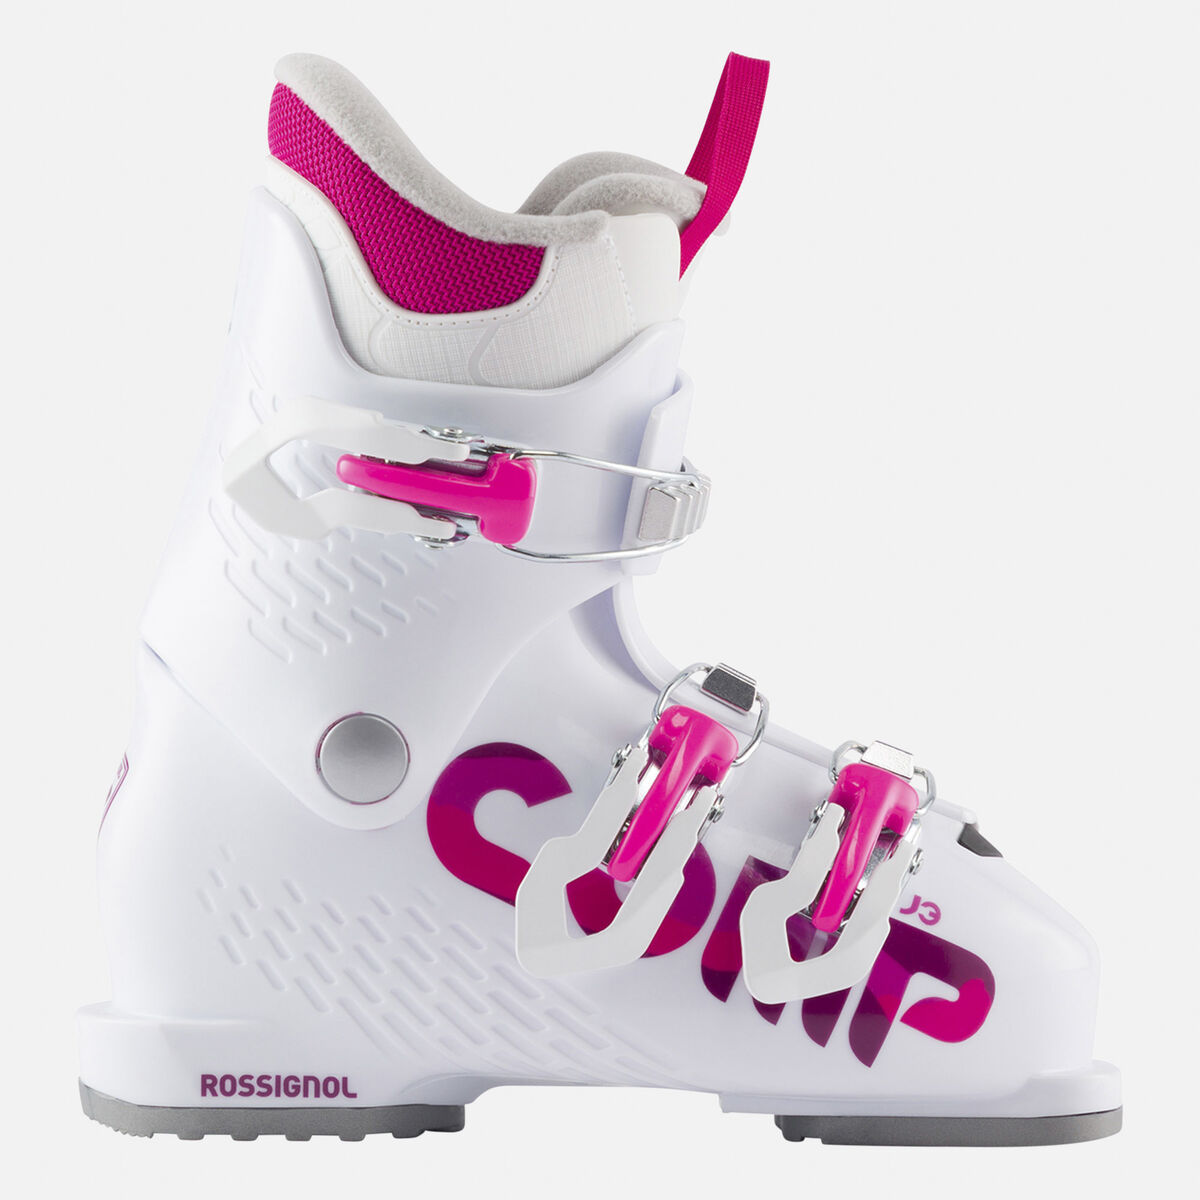 Chaussures de ski de piste enfant Comp J3